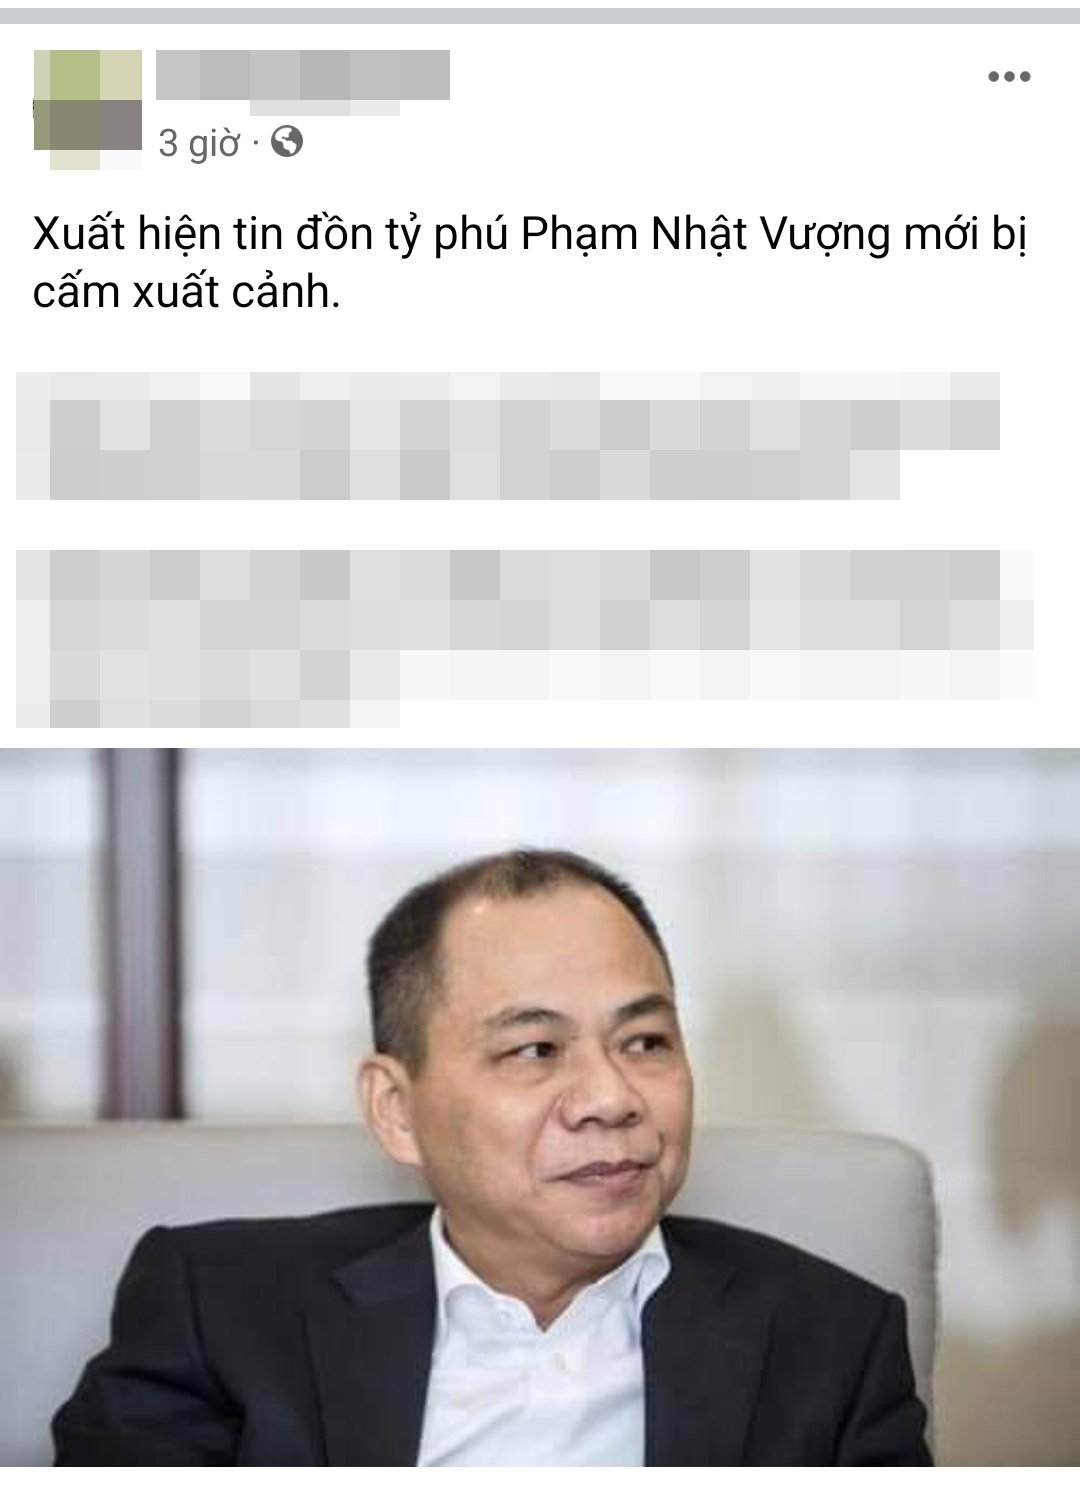 Hà Nội xử phạt người đưa thông tin thất thiệt liên quan đến Tập đoàn Vingroup 7,5 triệu đồng - Ảnh 1.